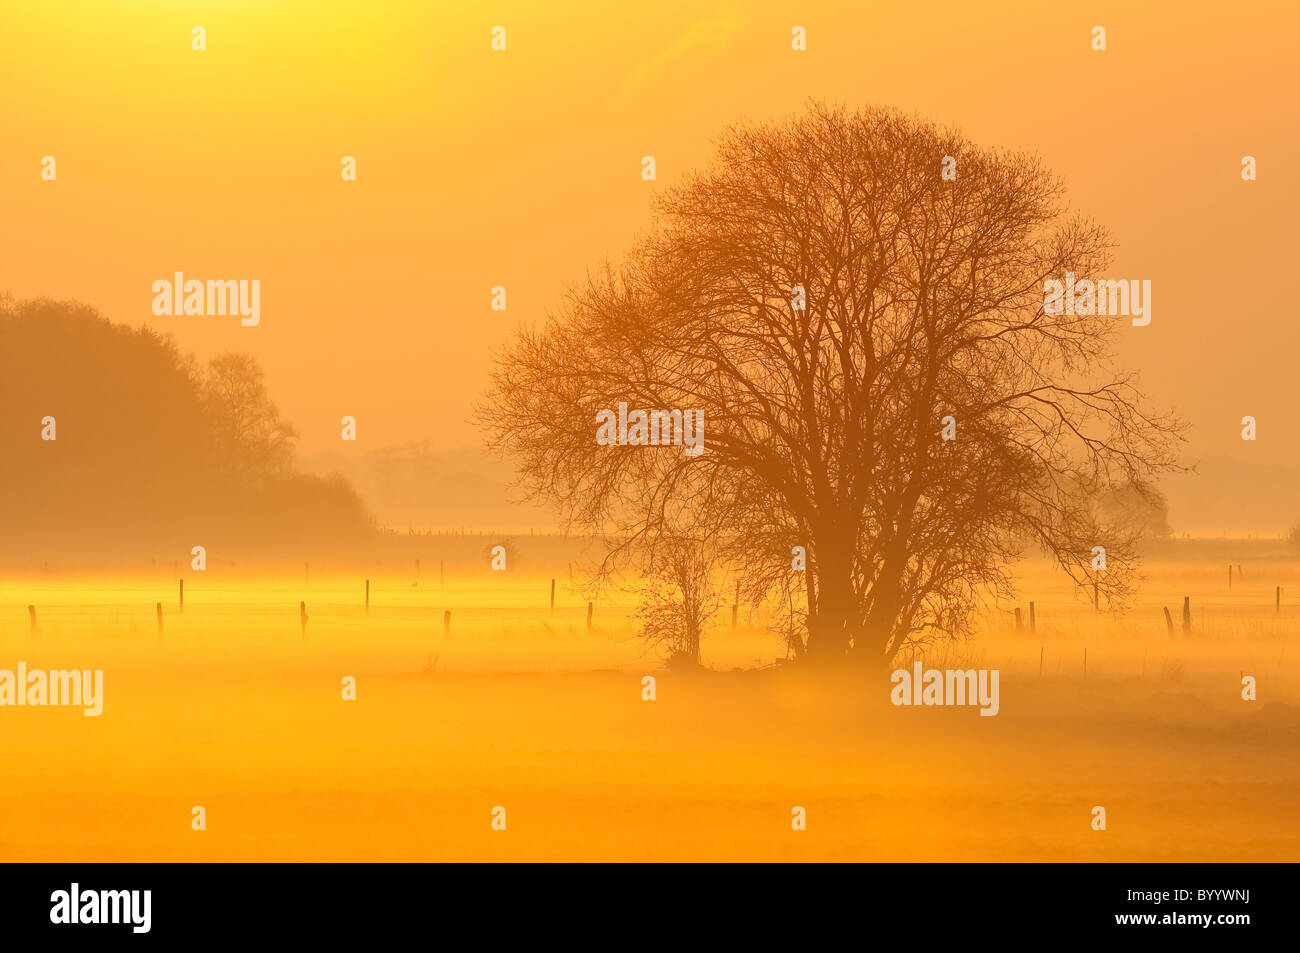 Morning Mist, dreamy landscape Stock Photo